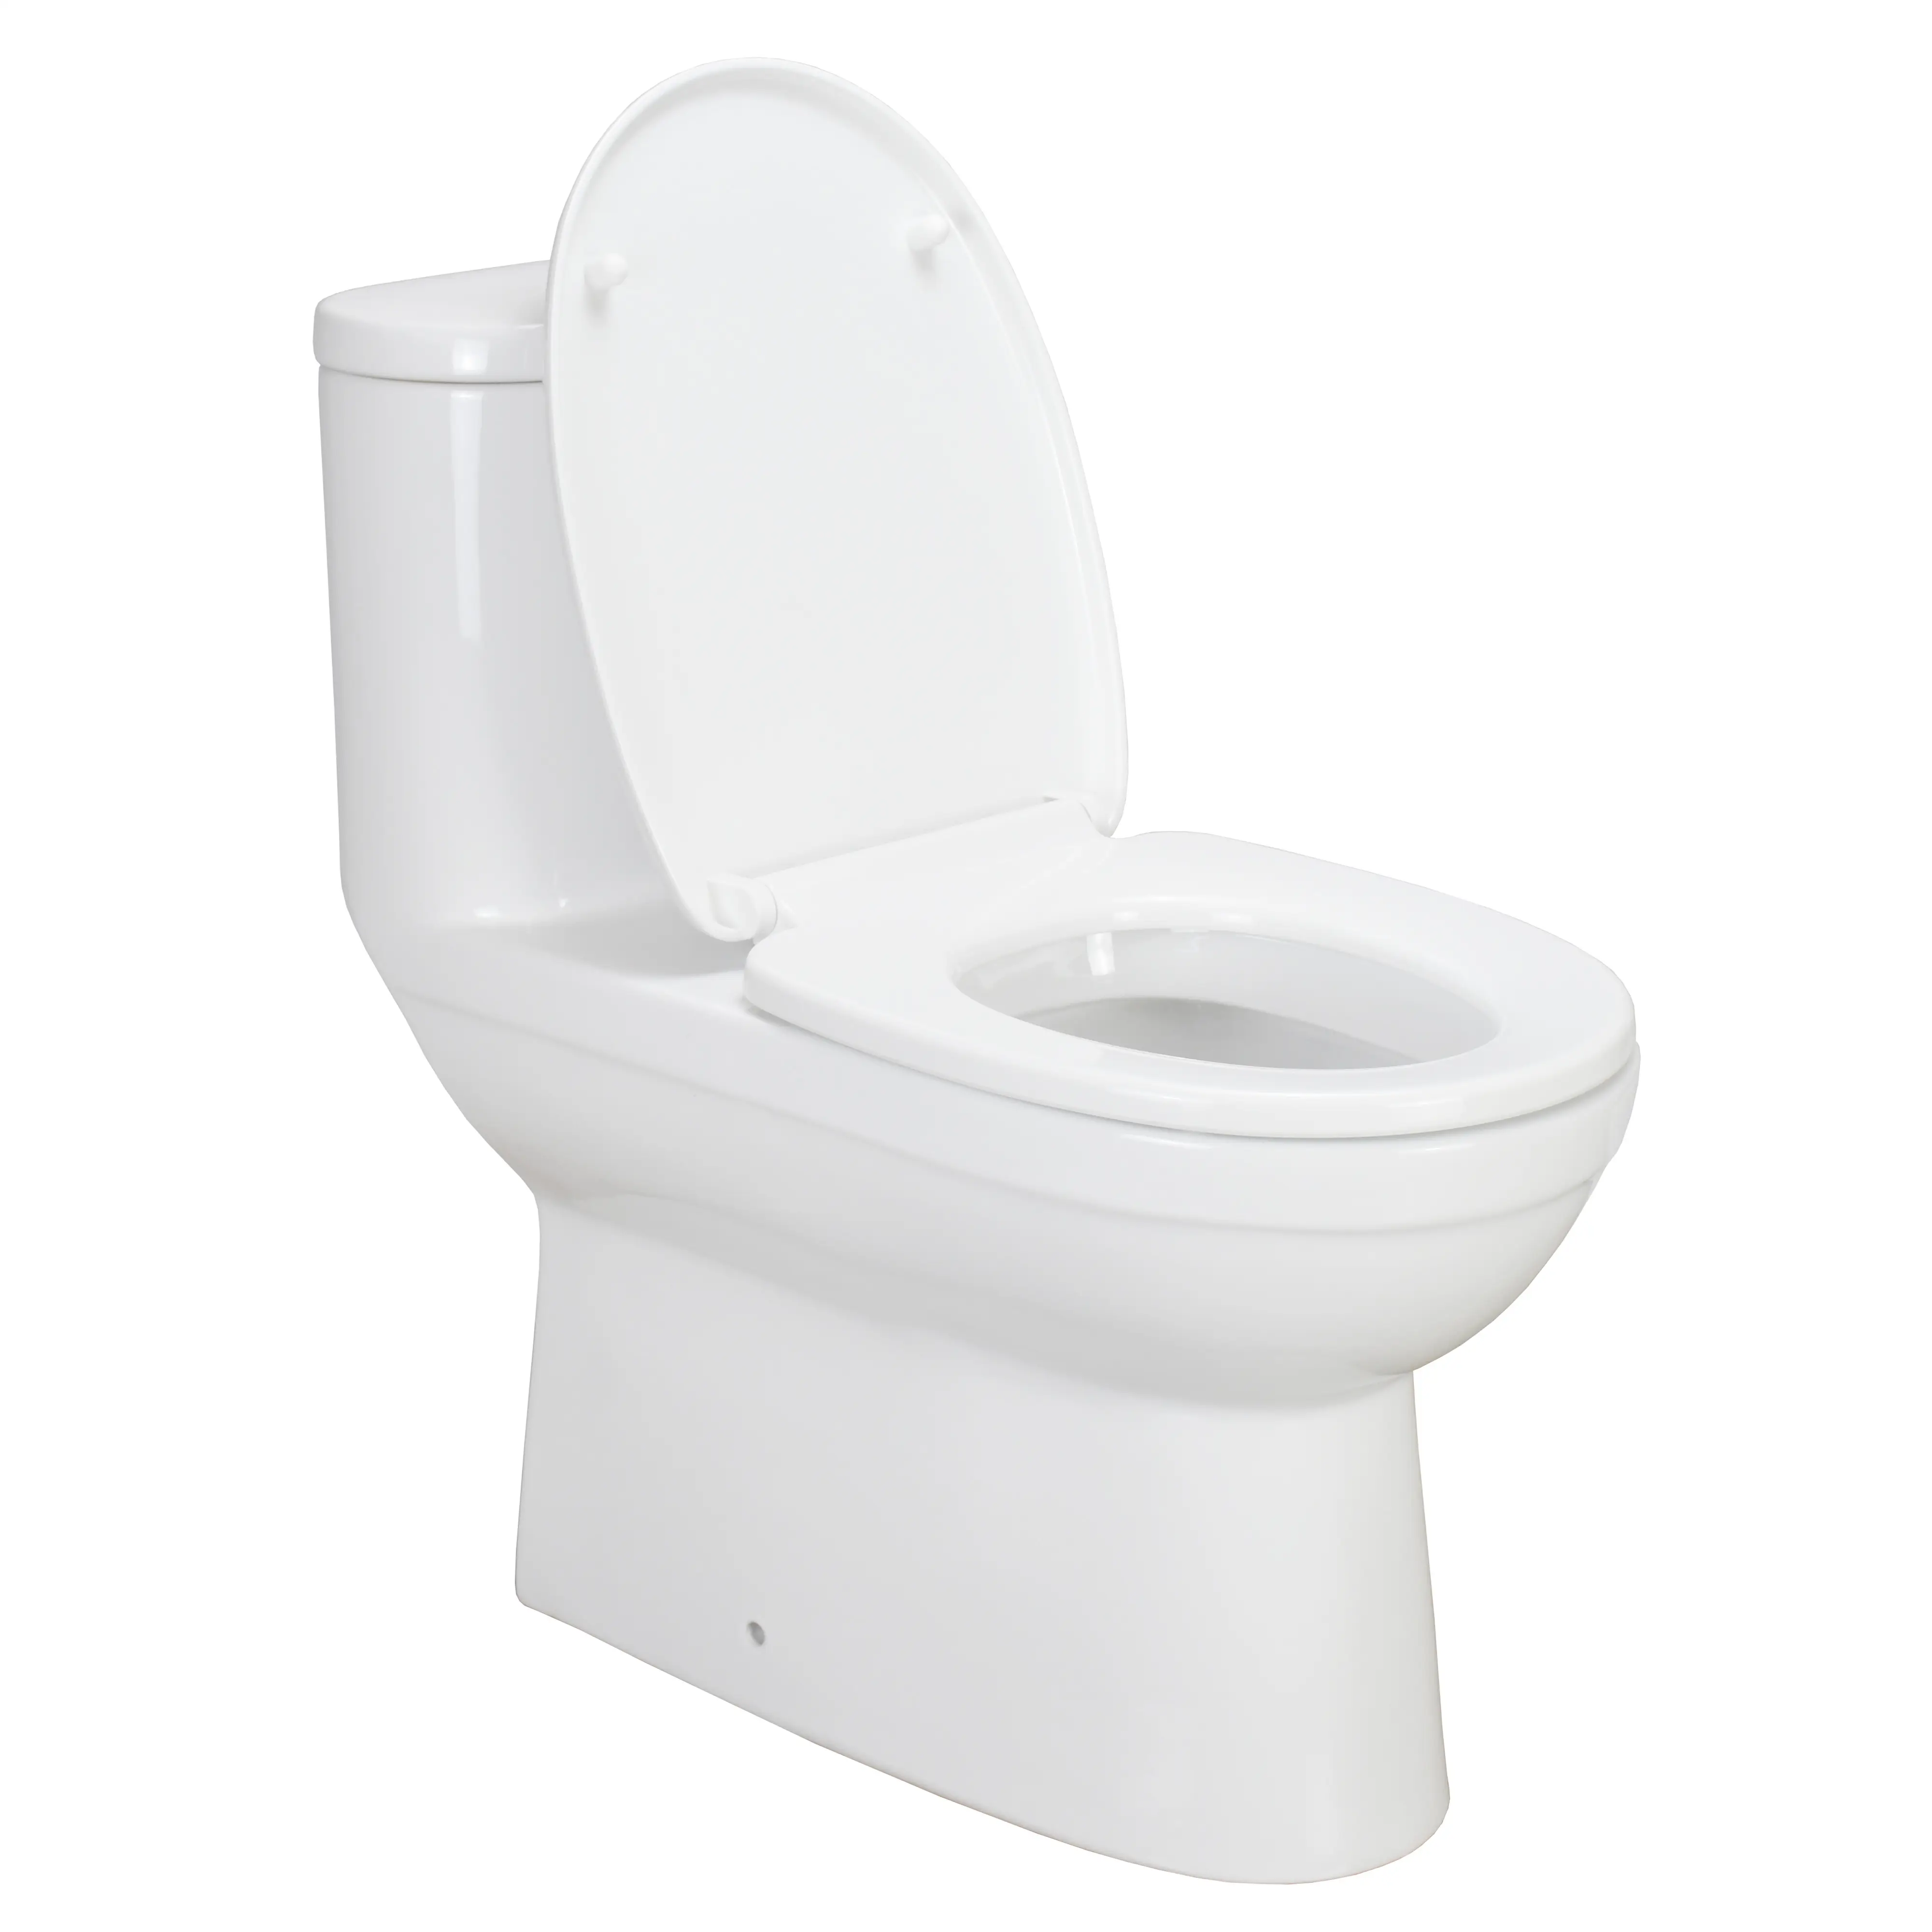 NL101 en kaliteli seramik tuvalet Wc boyutları yüksek son kat çıkış sifonik tek parça tuvalet